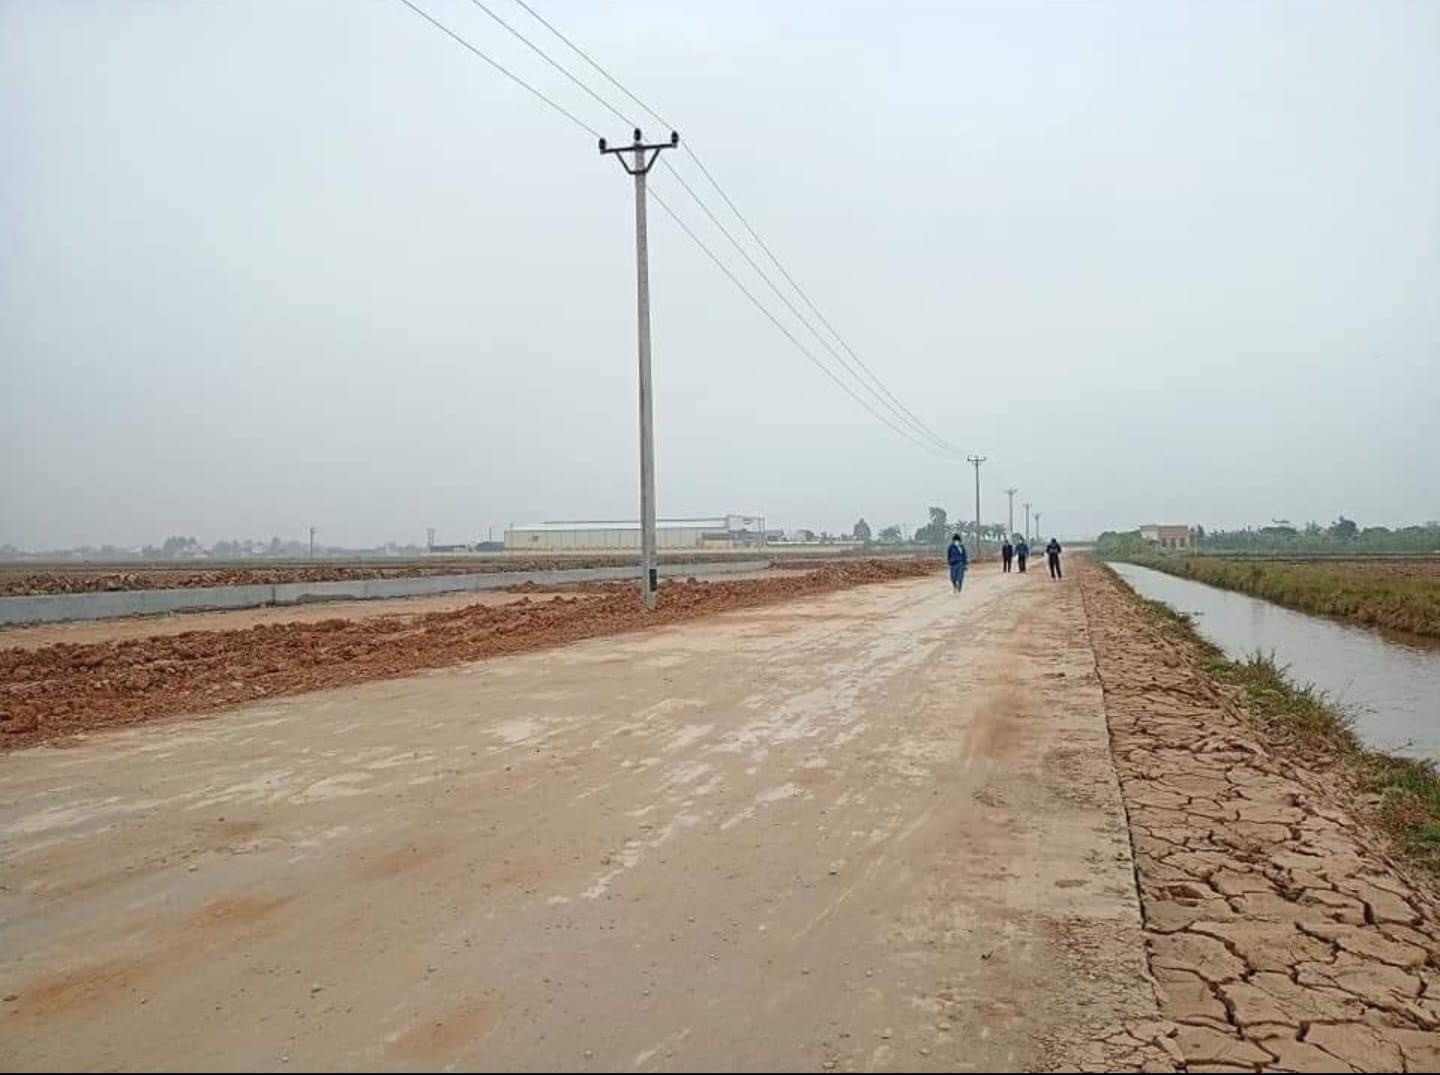 
Nhiều tháng qua, thị trường bất động sản tại Ninh Bình cũng "im lìm" như bao nơi khác nhưng giá đất vẫn không có dấu hiệu giảm
